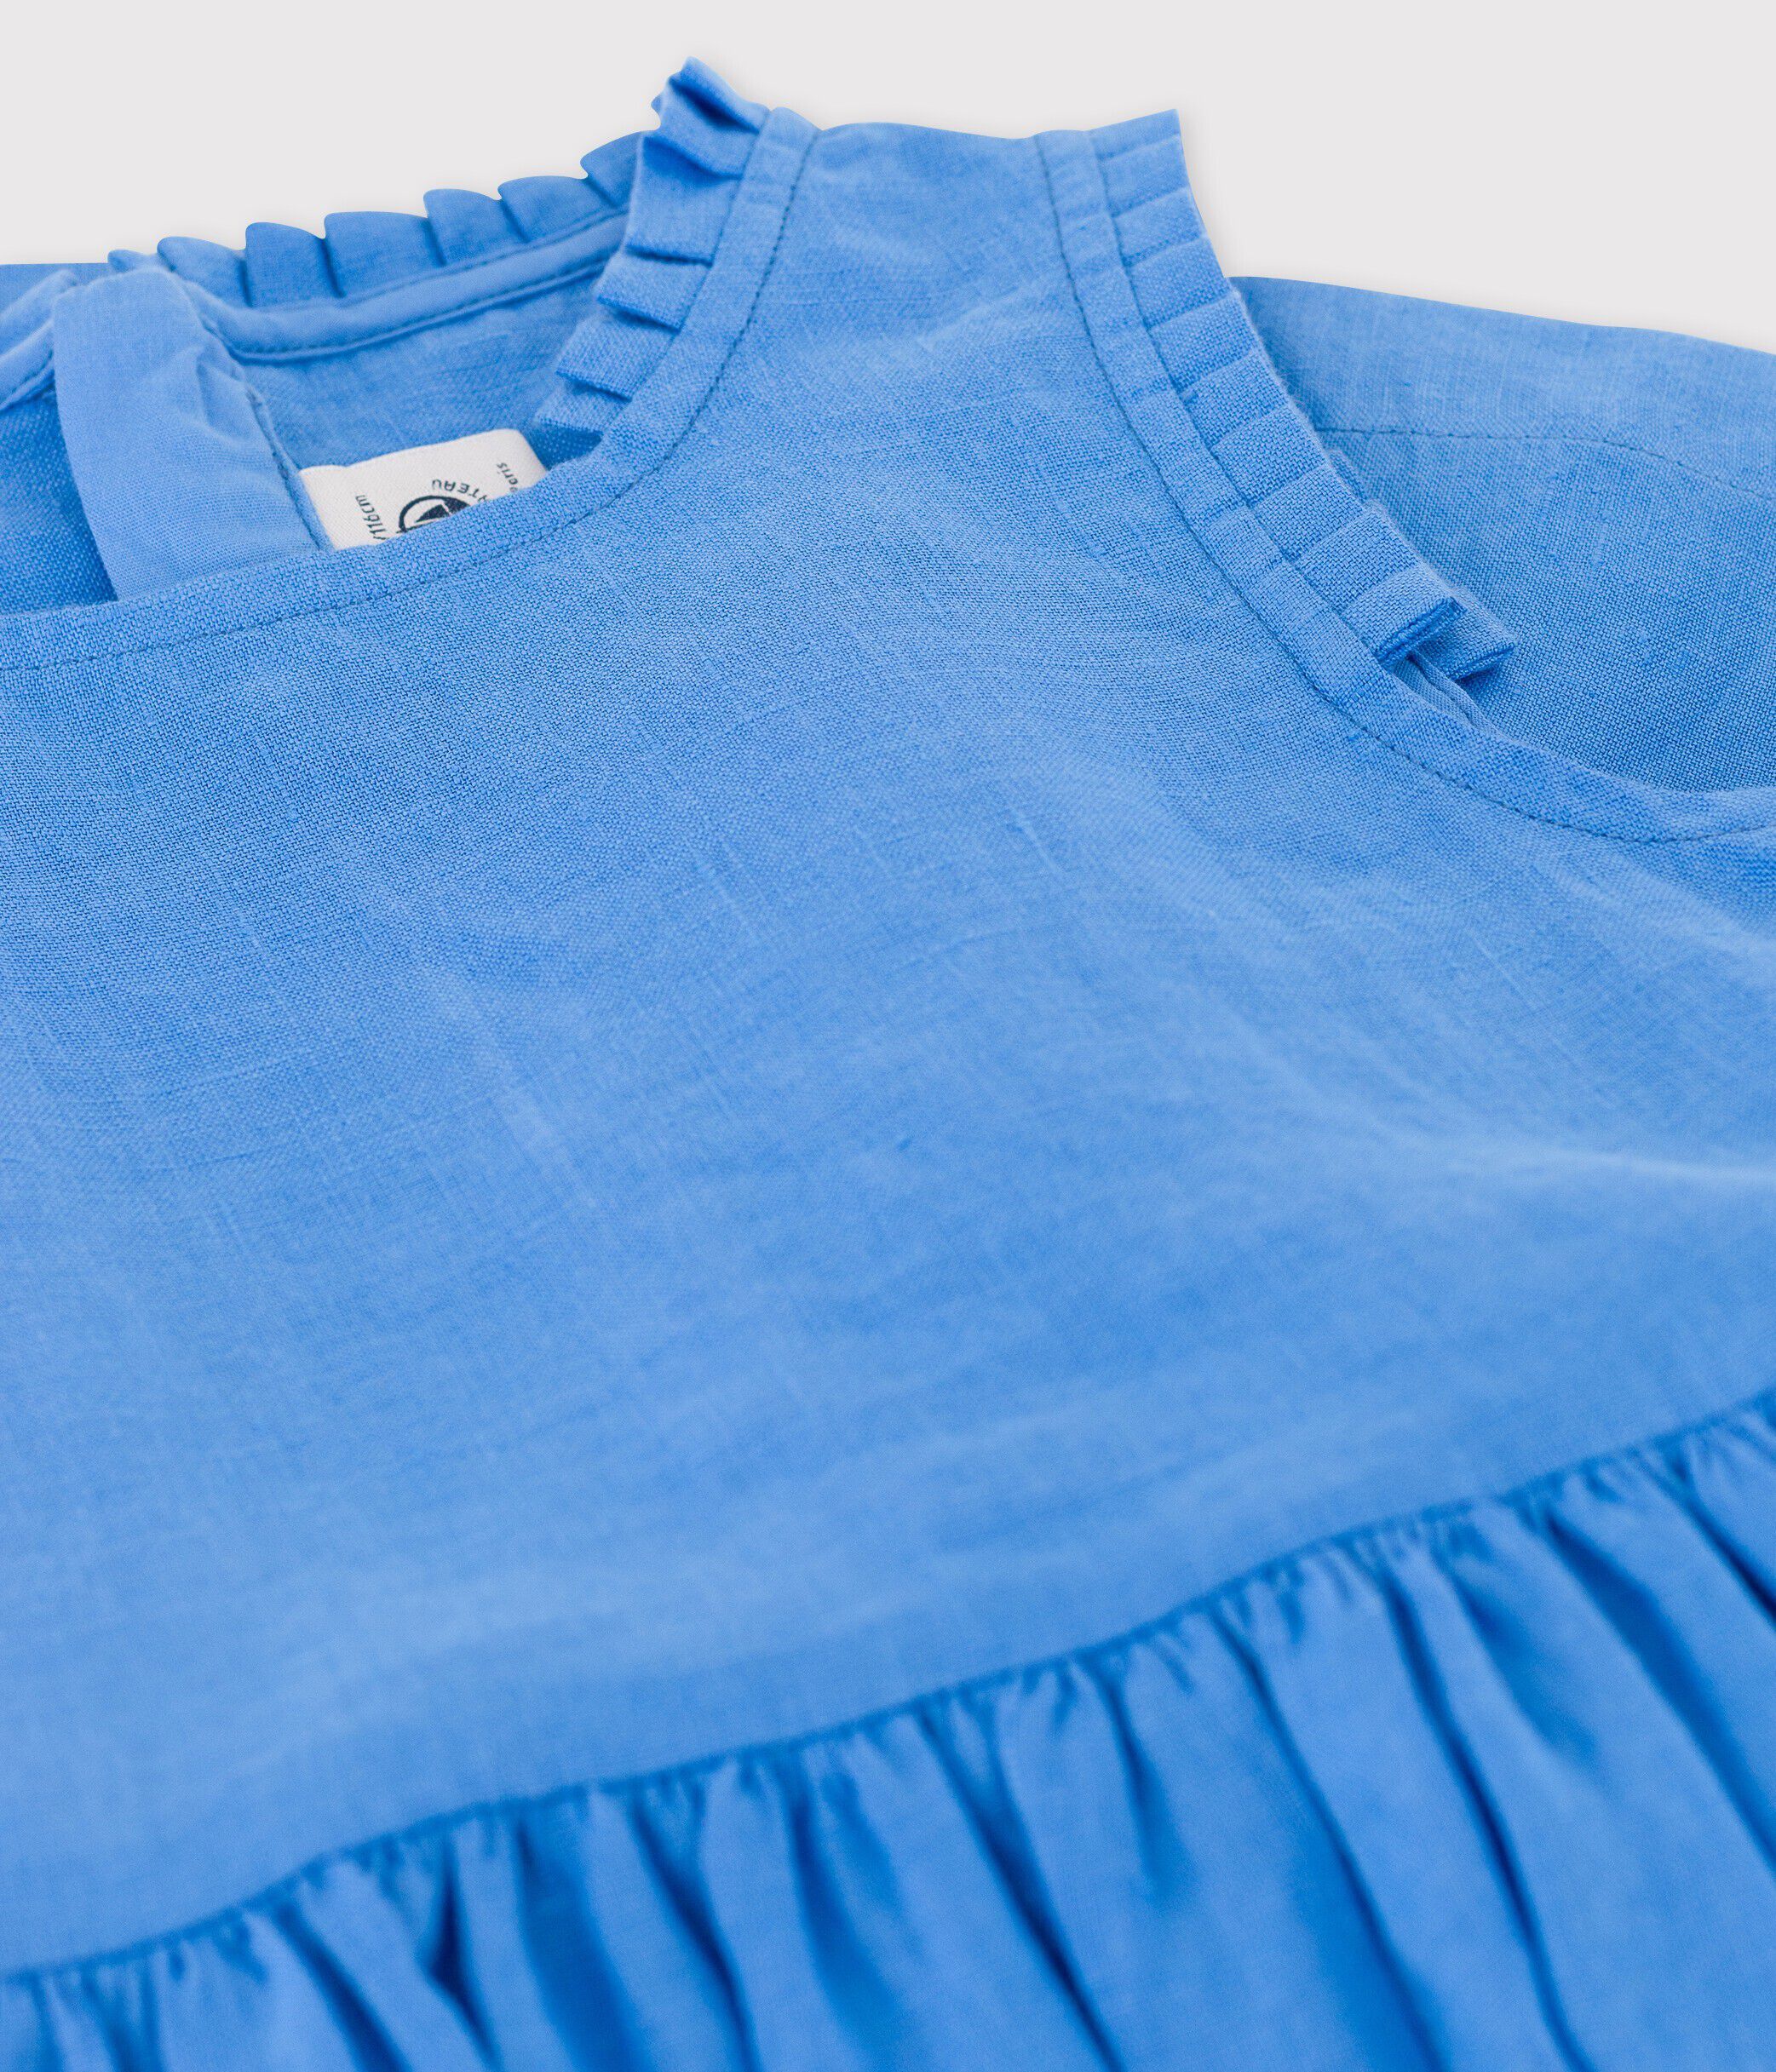 Adora Petit Bateau Adorable robe à manches courtes couleur bleu jean Etat neuf 